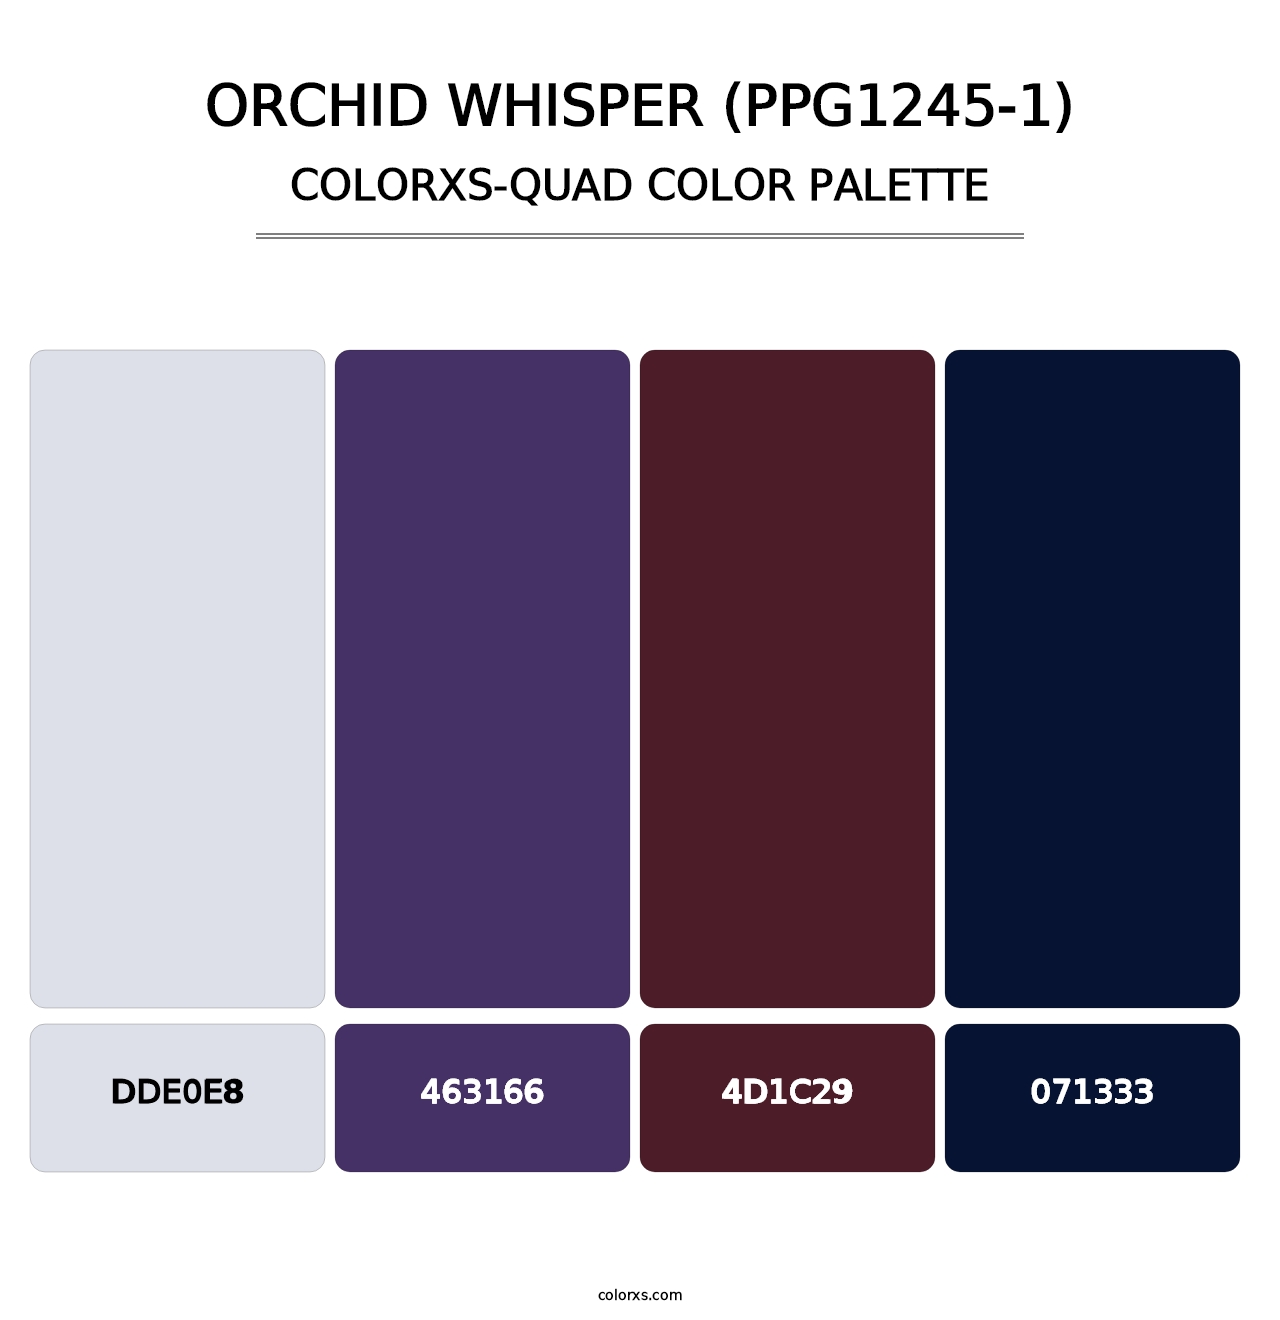 Orchid Whisper (PPG1245-1) - Colorxs Quad Palette